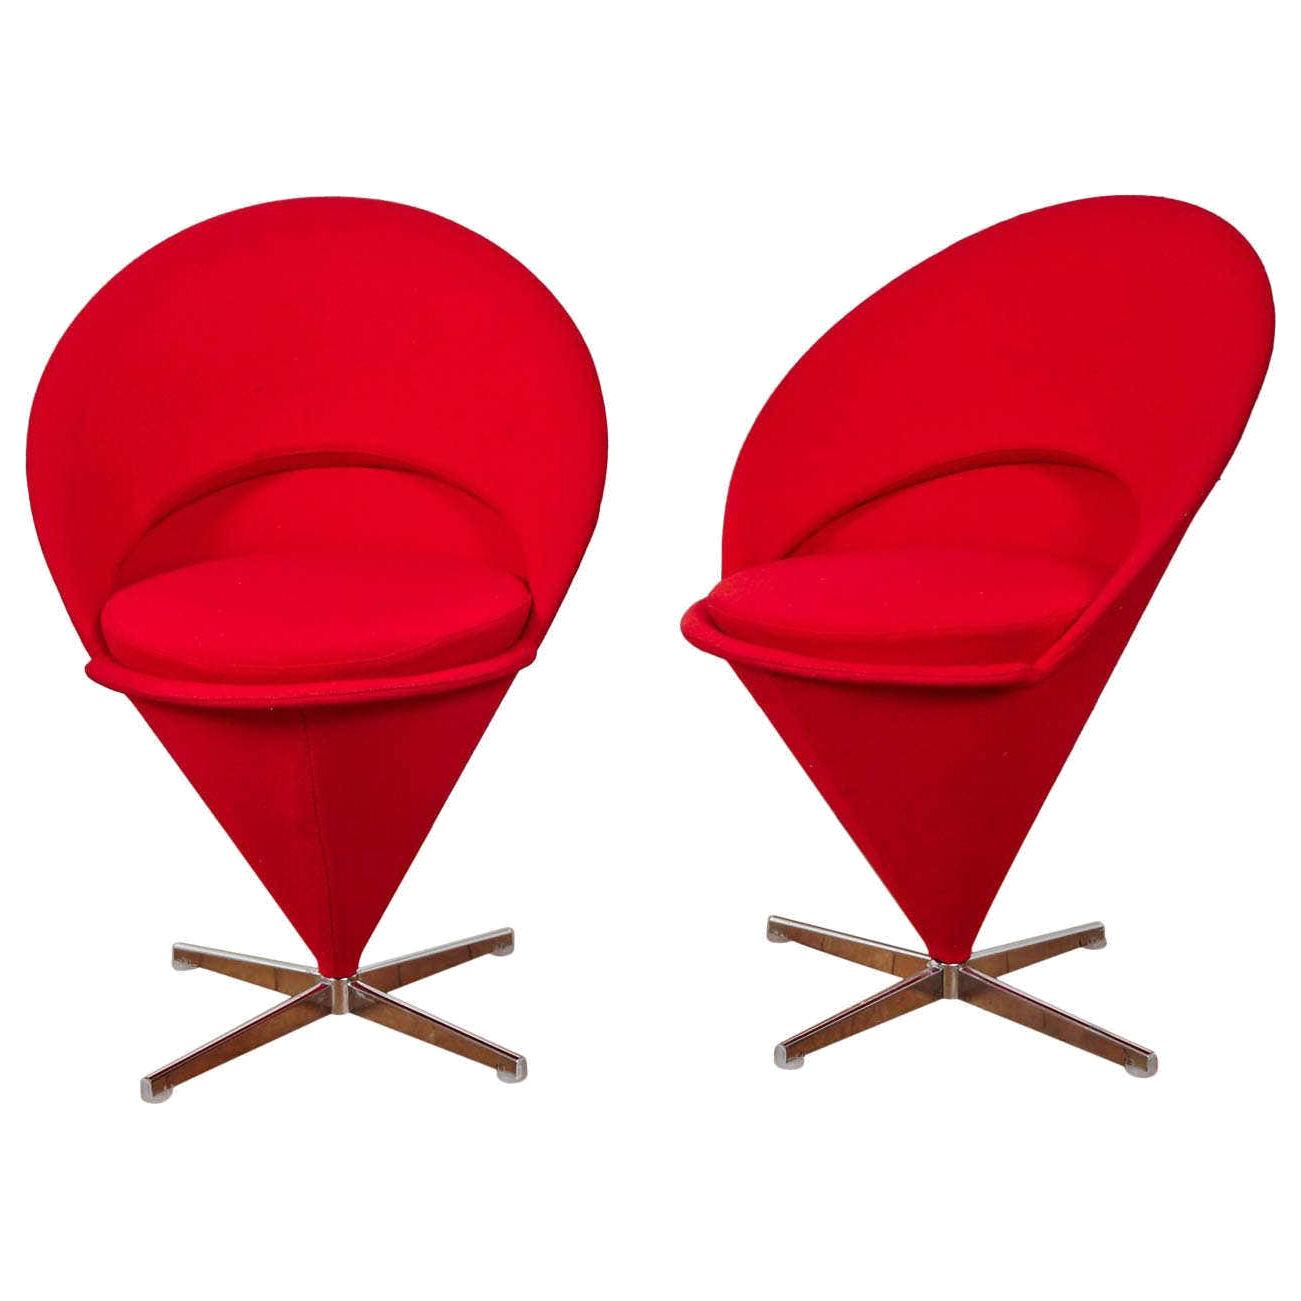 Pair of "K1 Cone Chairs" 1958 by Verner Panton